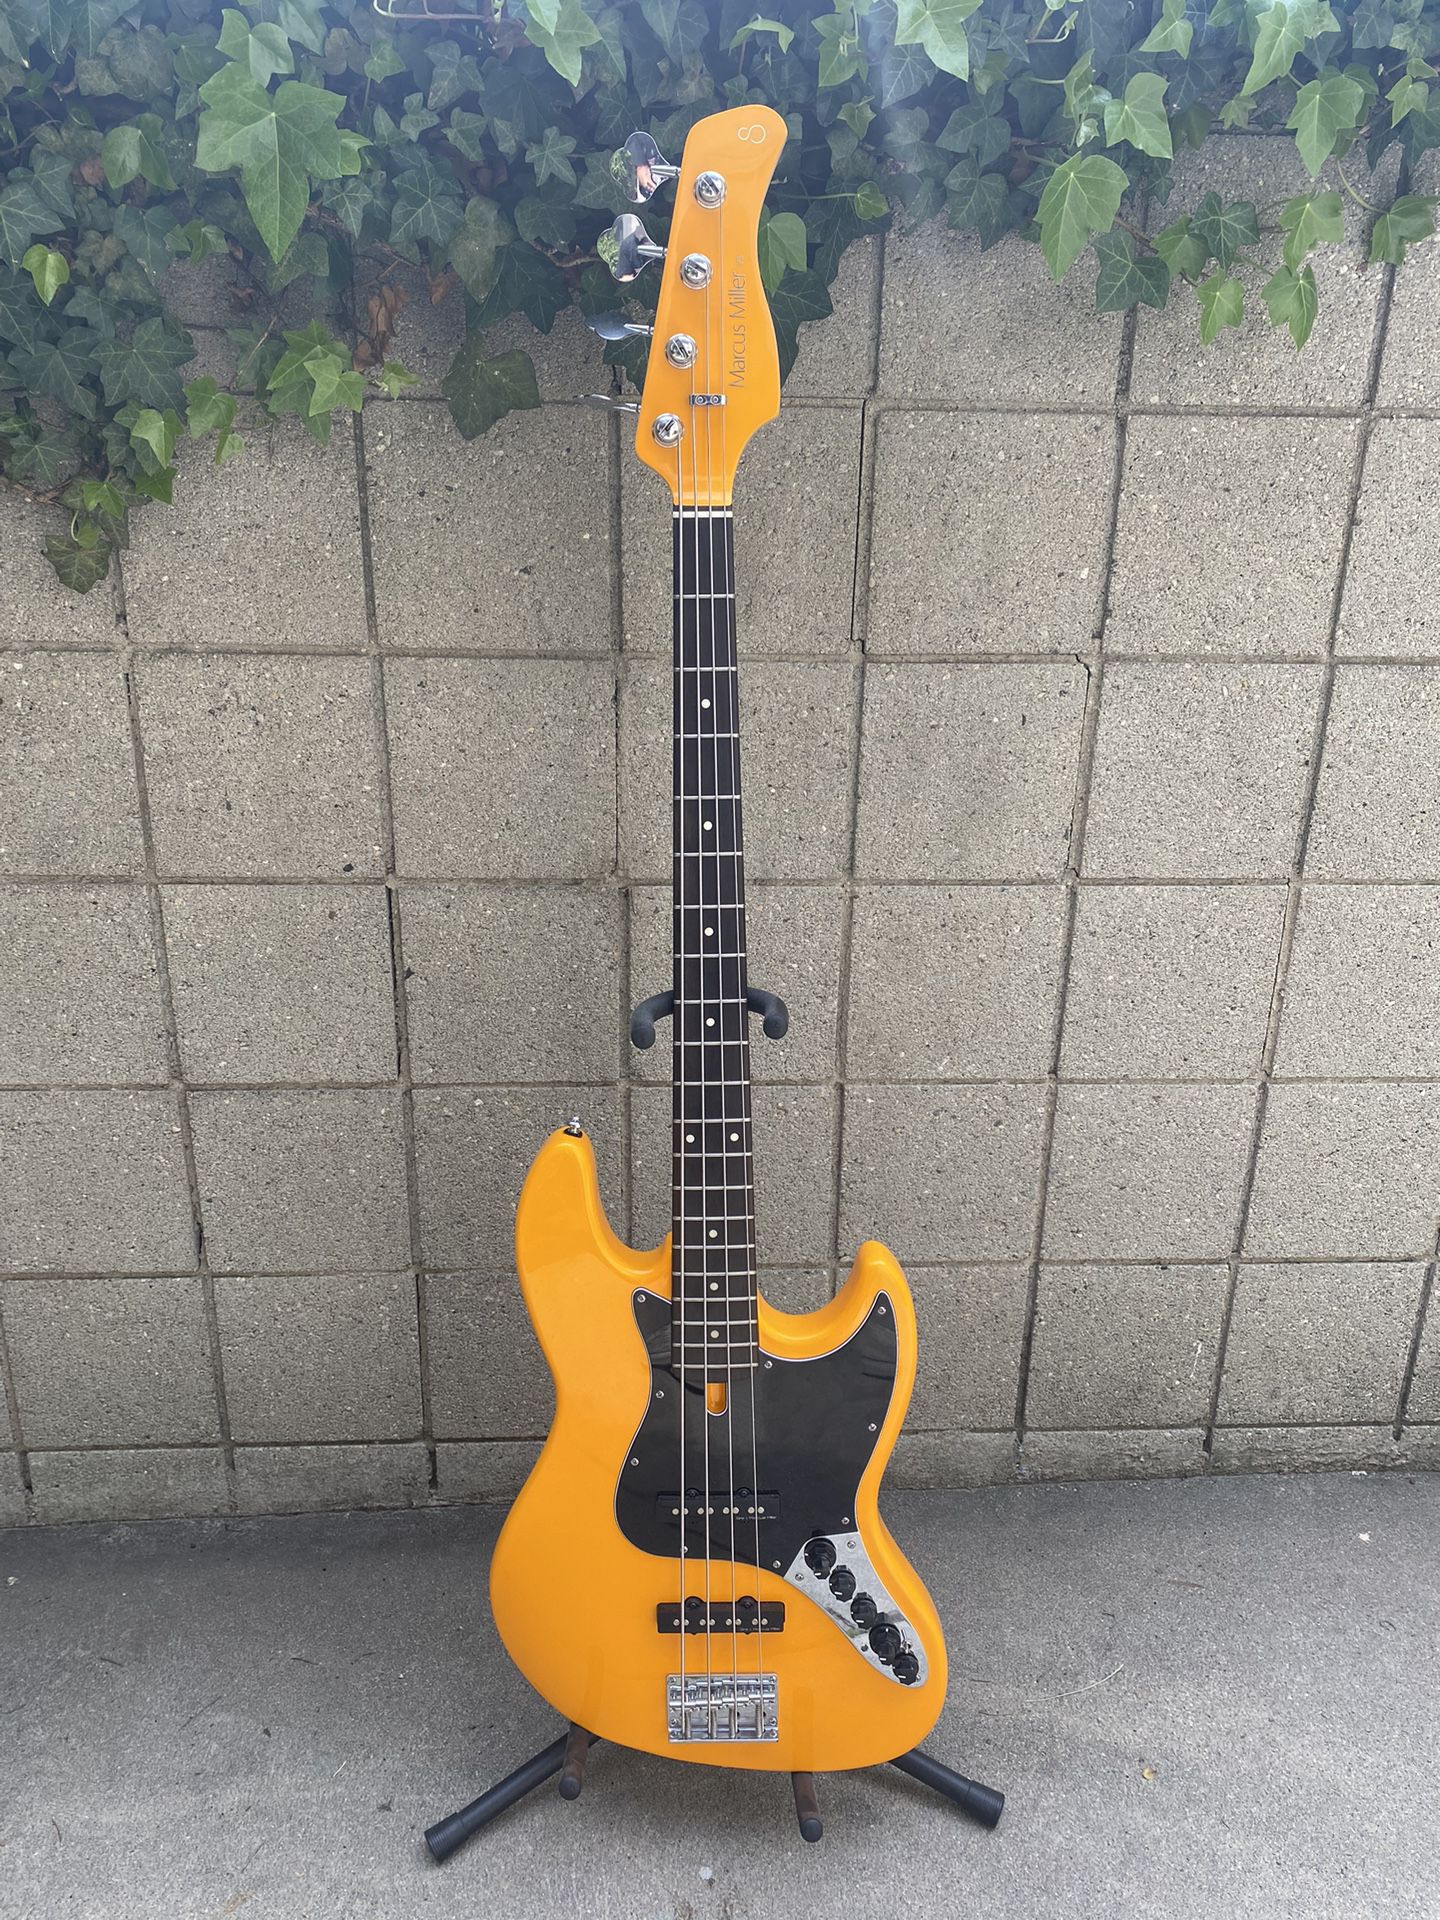 Marcus Miller Sire V3 (Gen 2) Bass guitar